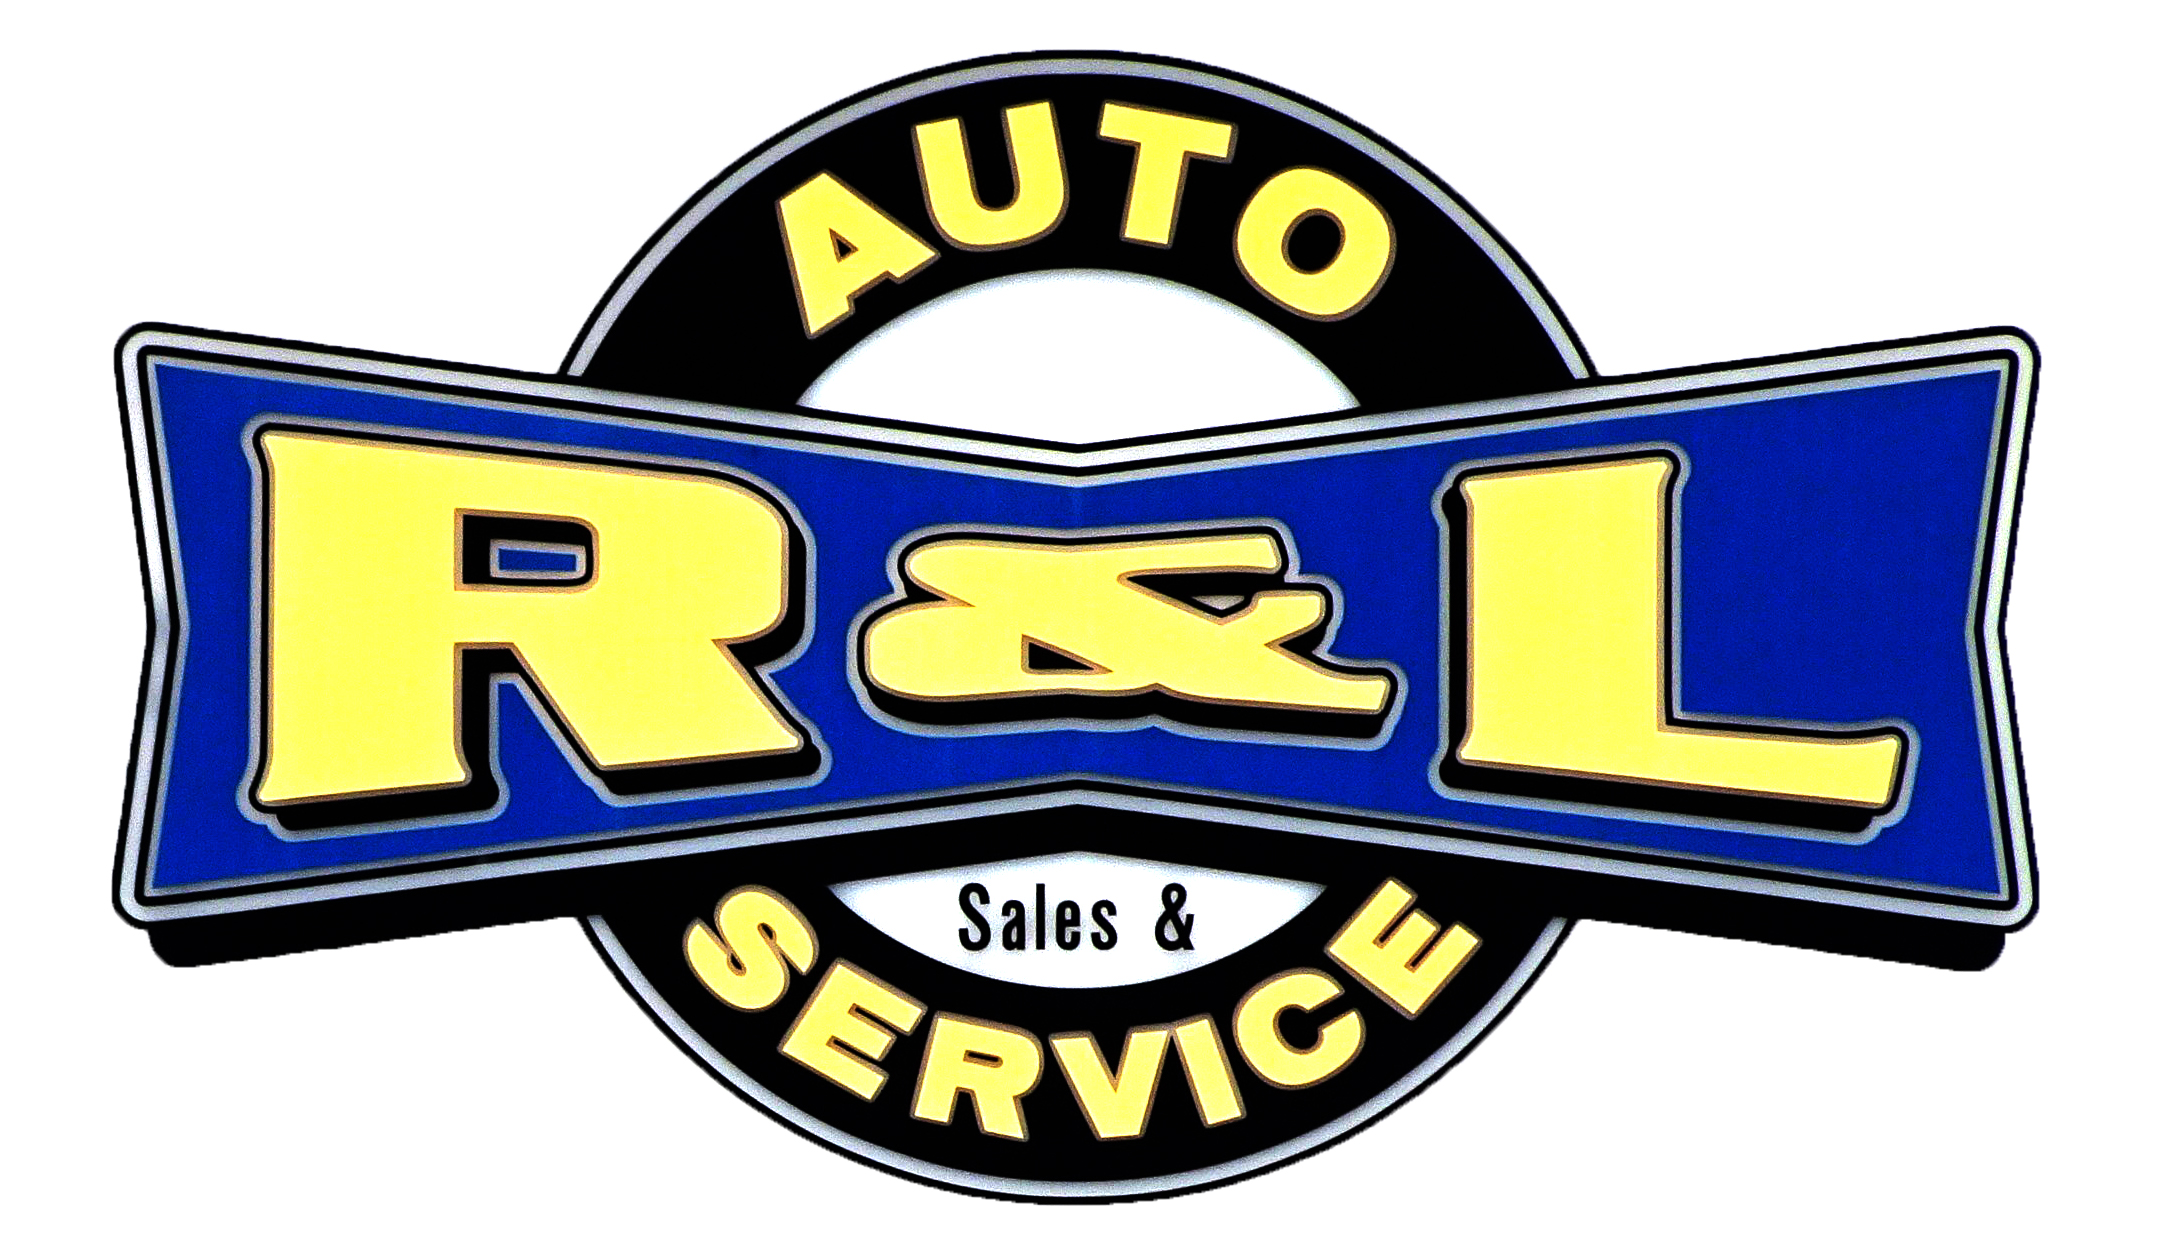 R & L auto service